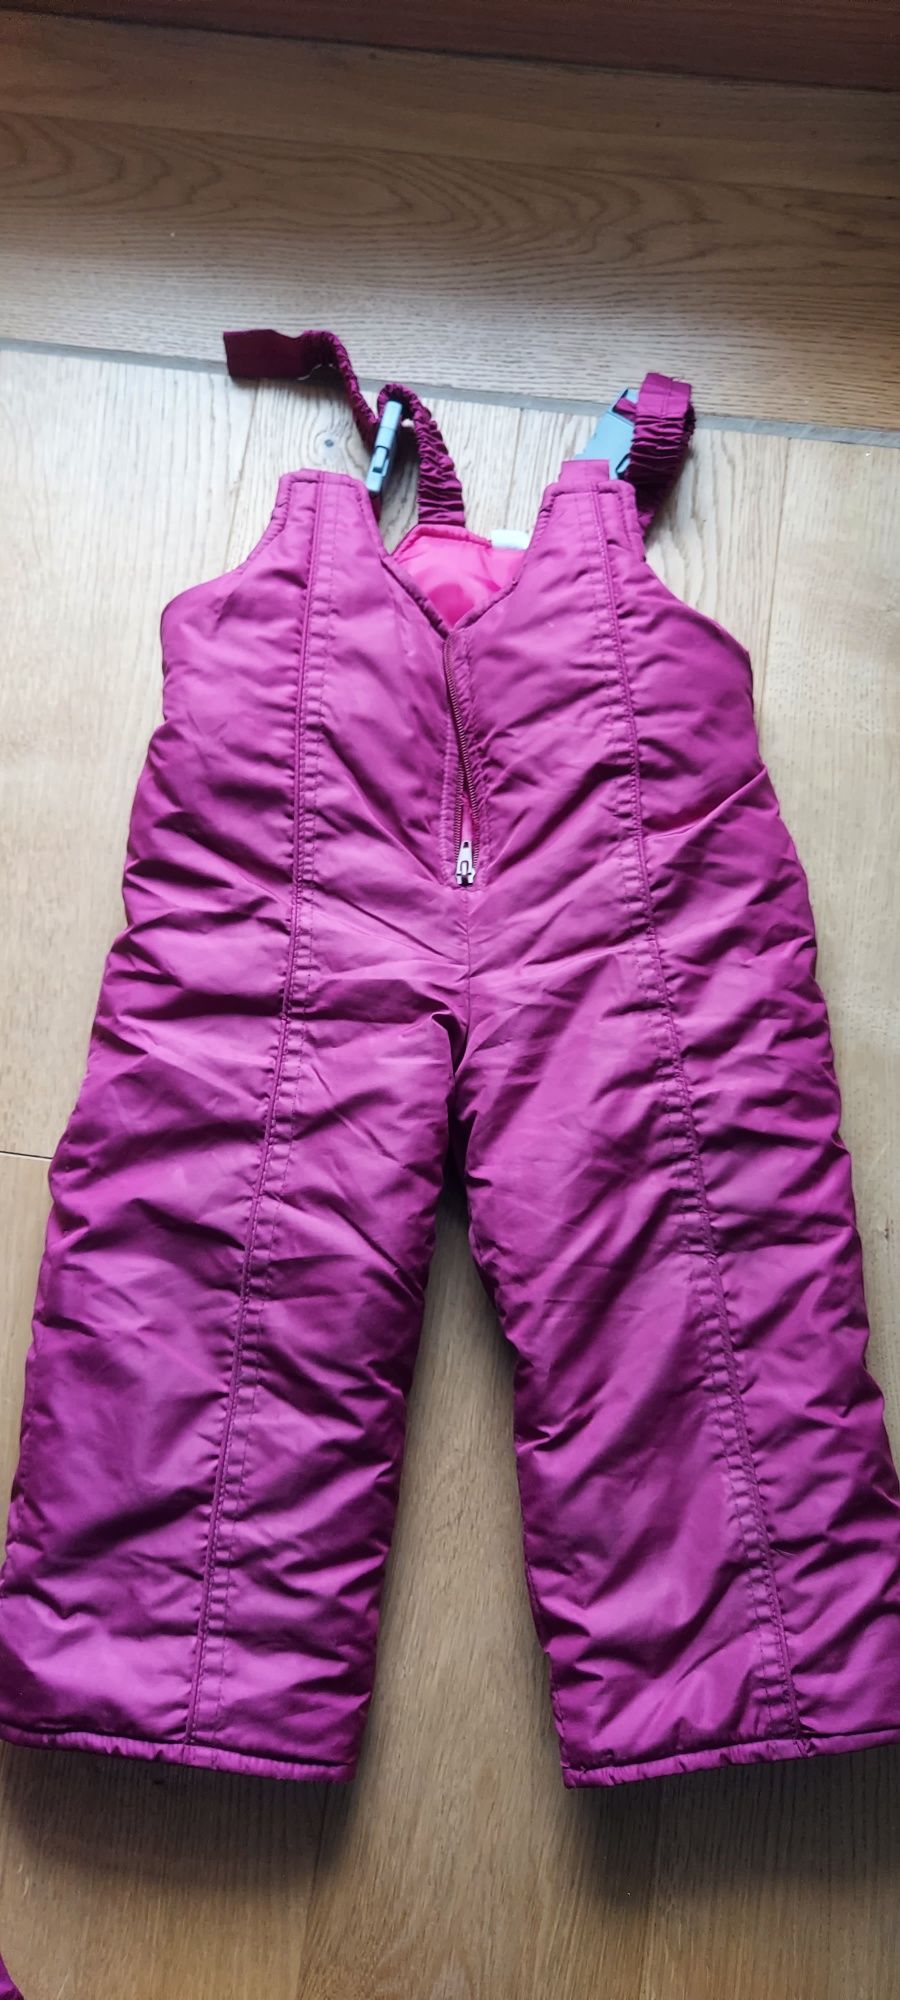 Kombinezon zimowy: kurtka ocieplana i spodnie ocieplane gratis.